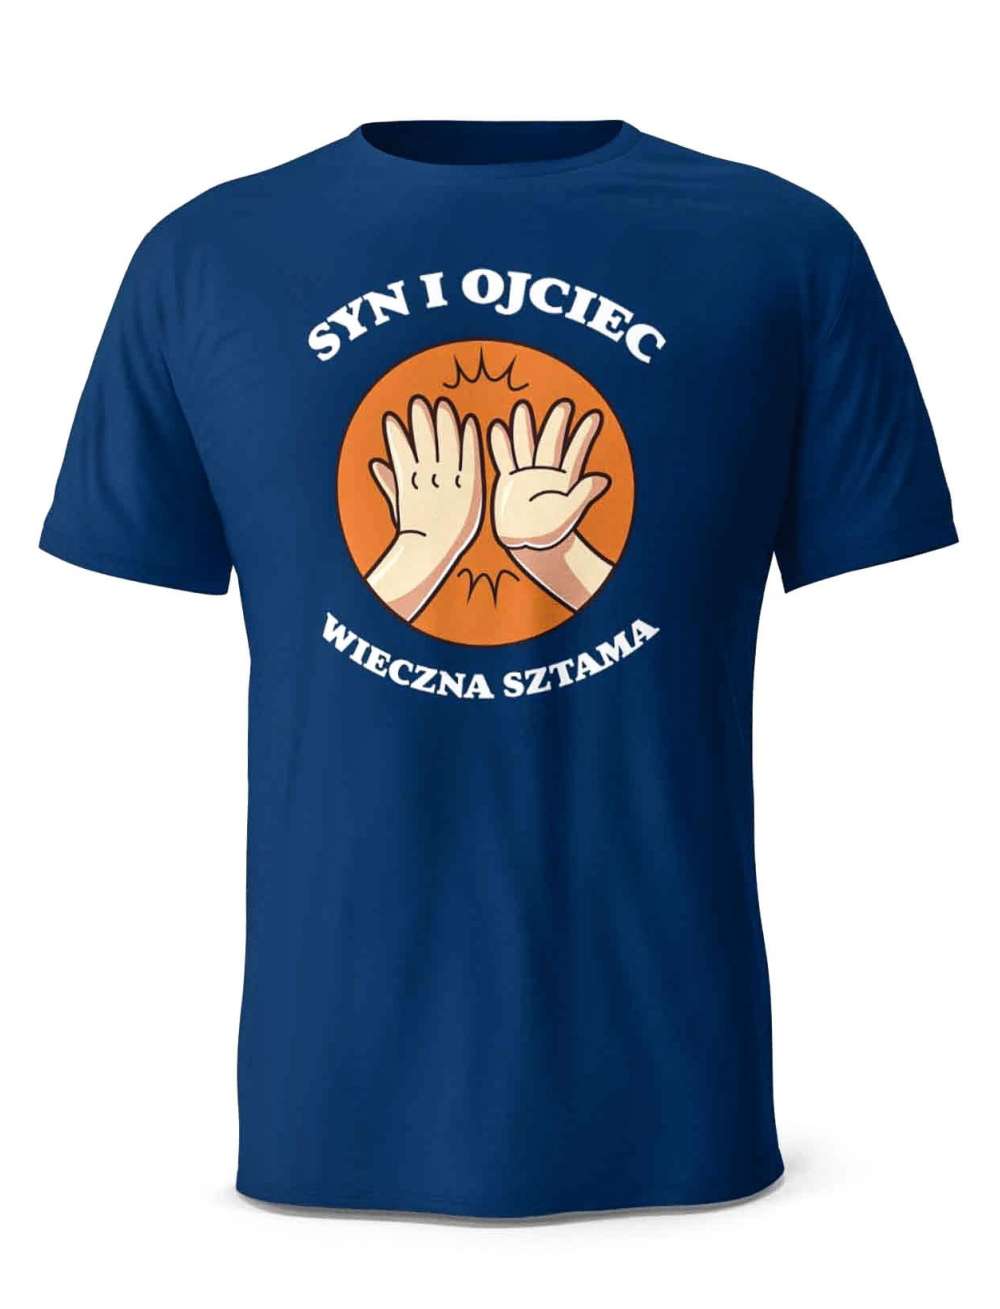 Koszulka Syn i Ojciec Wieczna SZtama, T-shirt Dla Taty